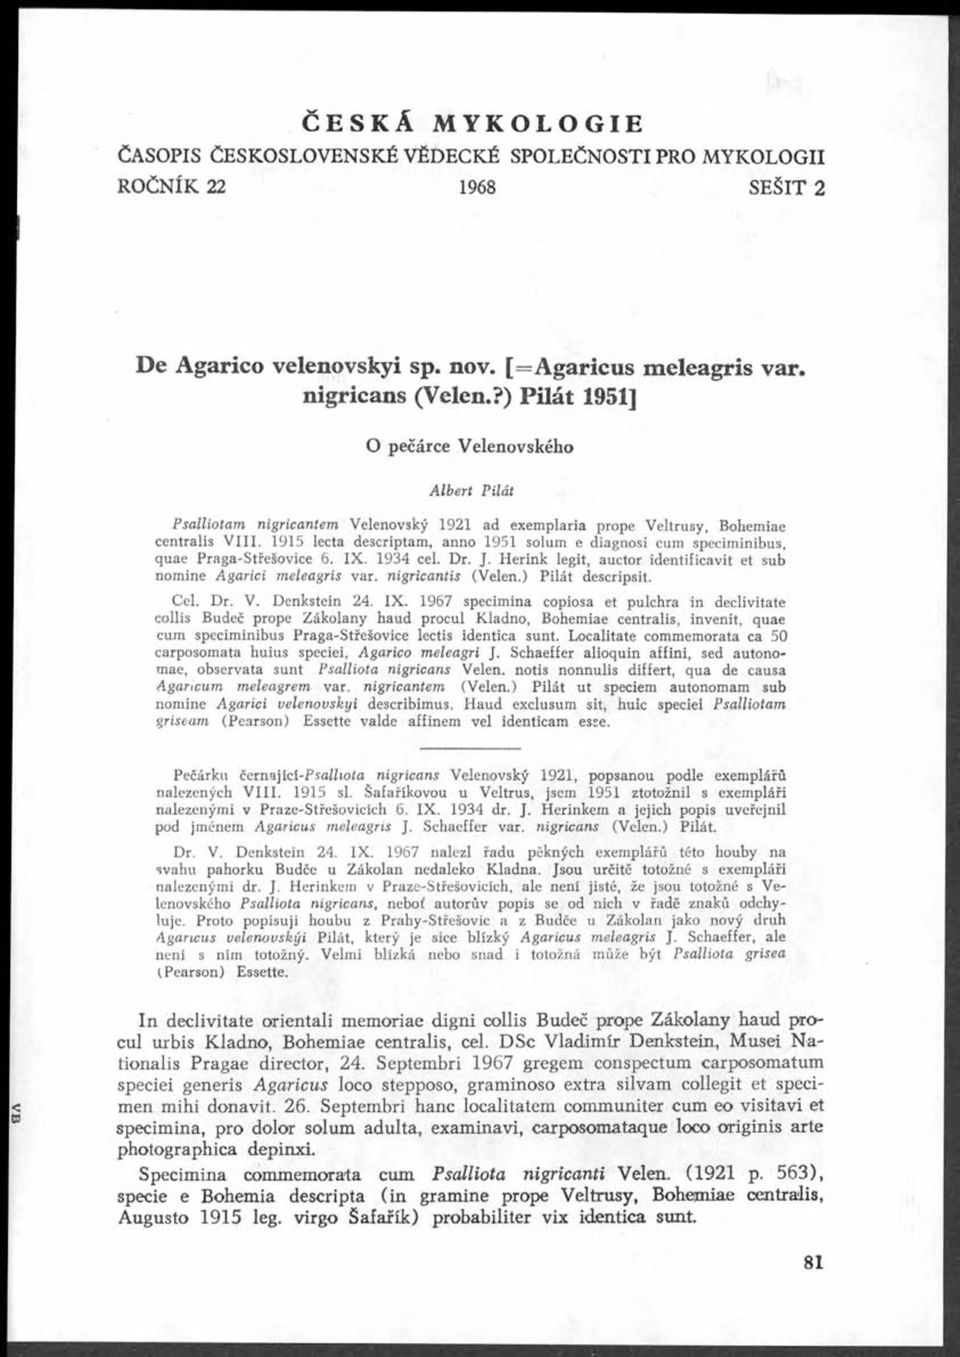 1915 lecta descriptam, anno 1951 solum e diagnosi cum speciminibus, quae Praga-Střešovice 6. X. 1934 cel. Dr. J. erink legit, auctor identificavit et sub nomine Agarici meleagris var.